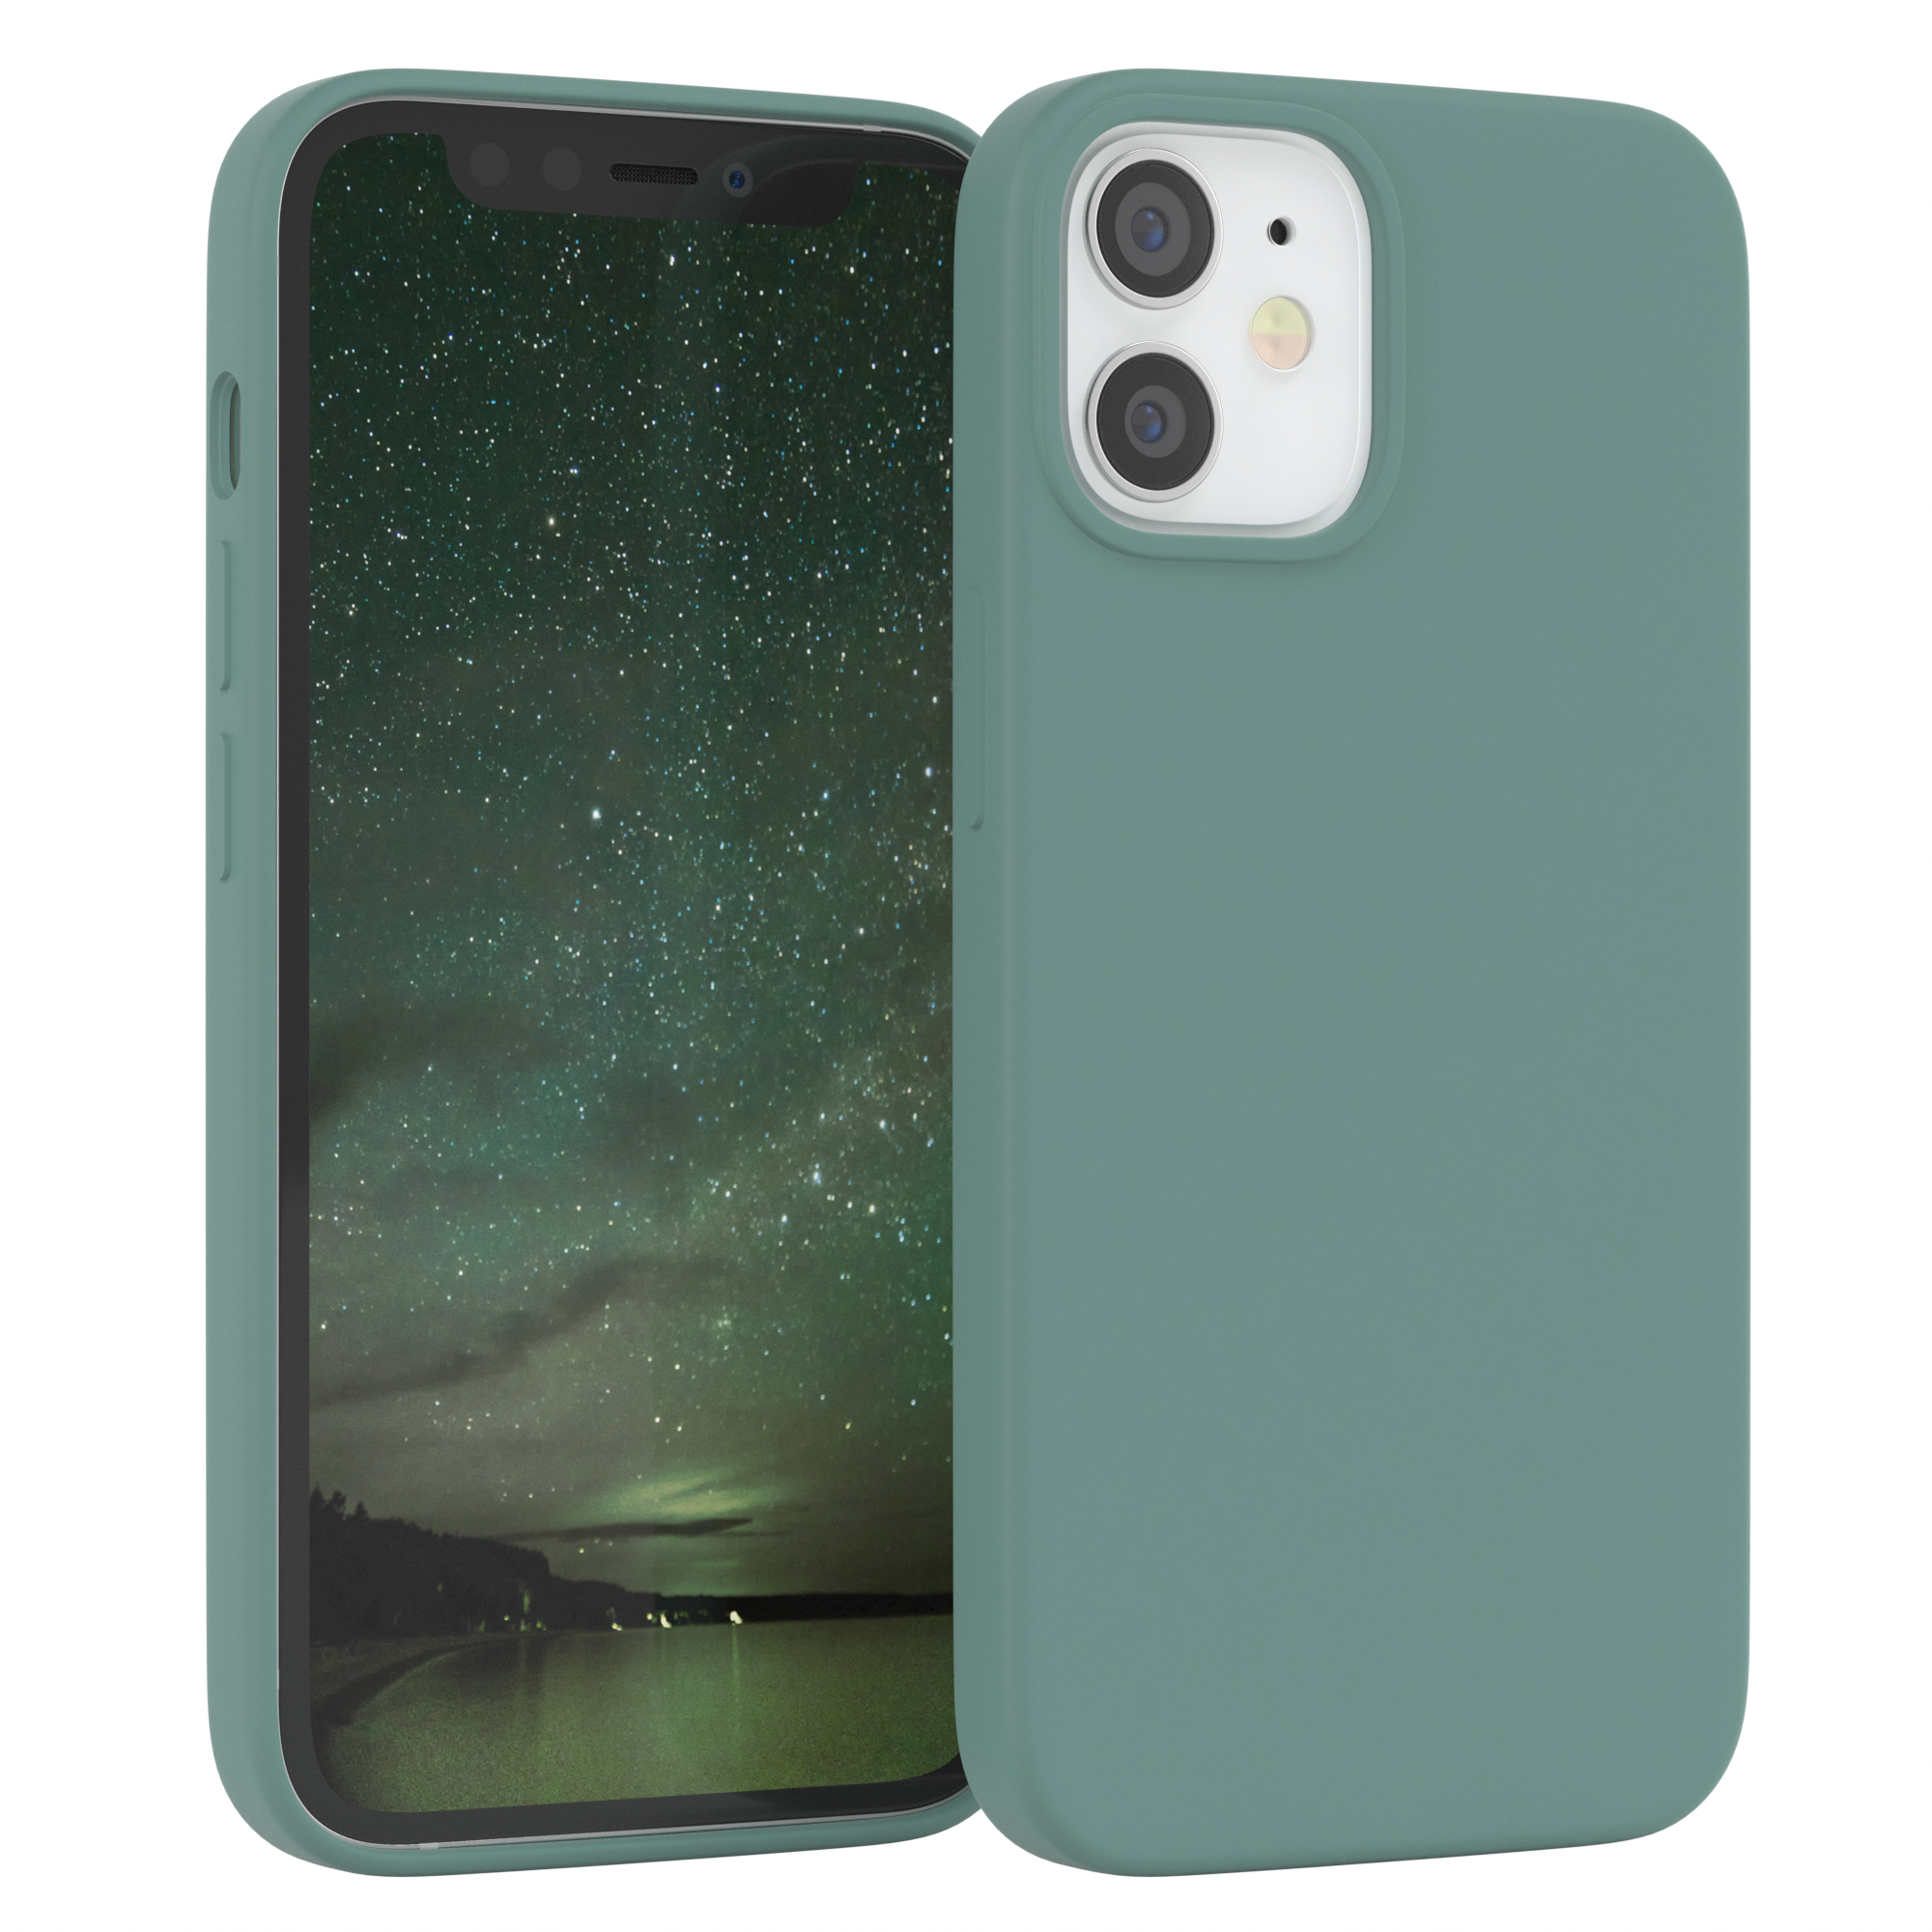 EAZY CASE Premium Silikon Handycase, / Nachtgrün iPhone 12 Mini, Grün Apple, Backcover